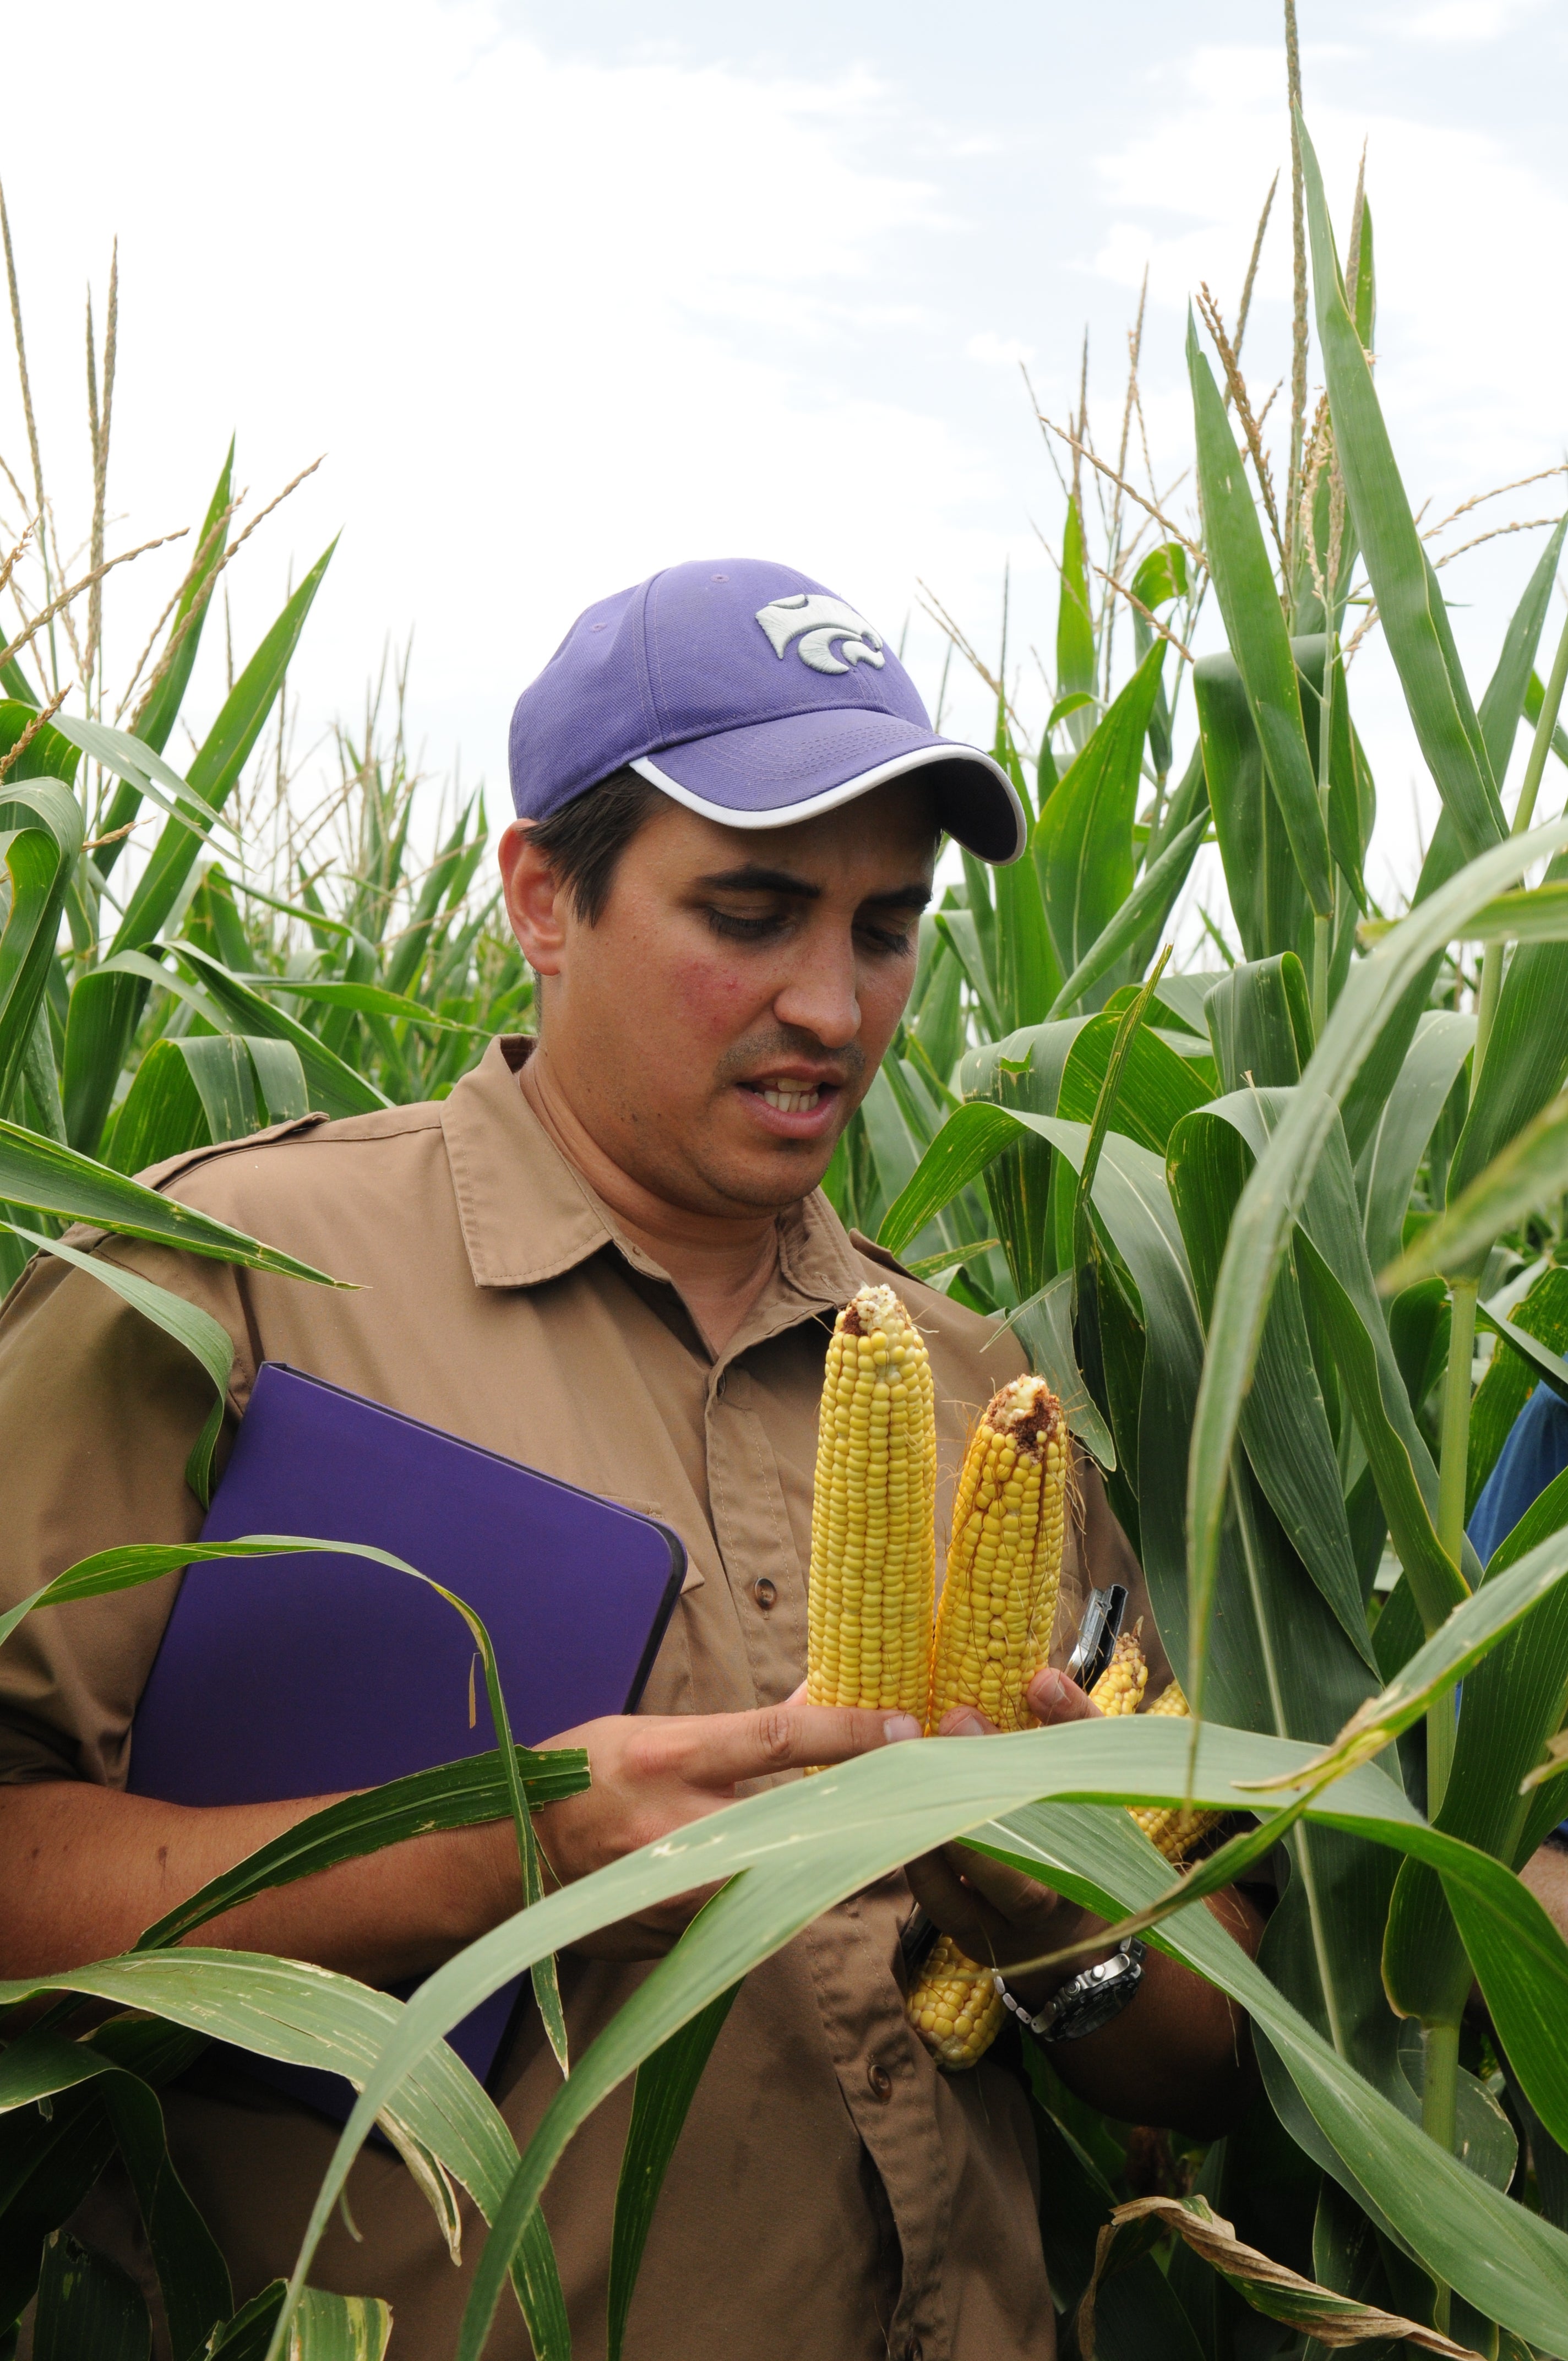 Farmer analyzing corn